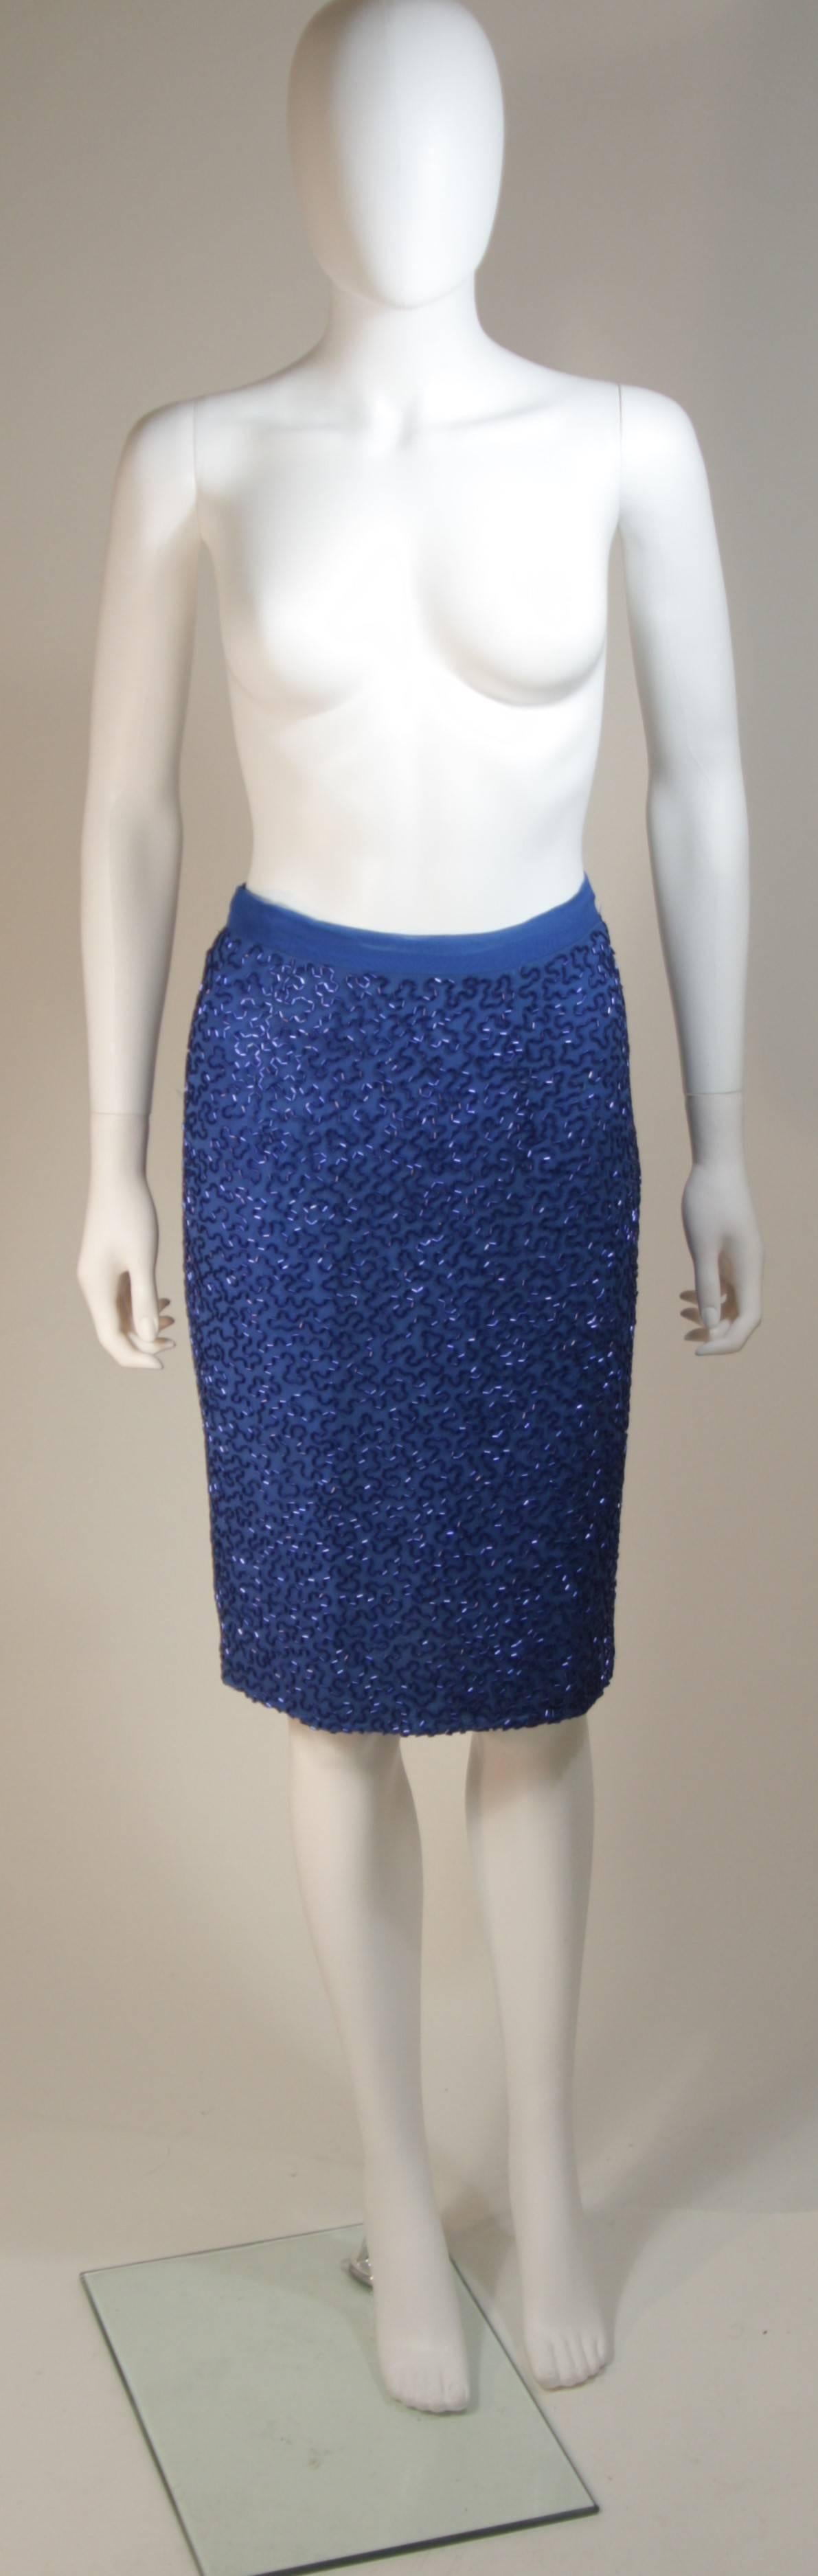 STEPHEN YEARIK Royal Blue Silk Beaded Skirt Ensemble Size 4-6  For Sale 2